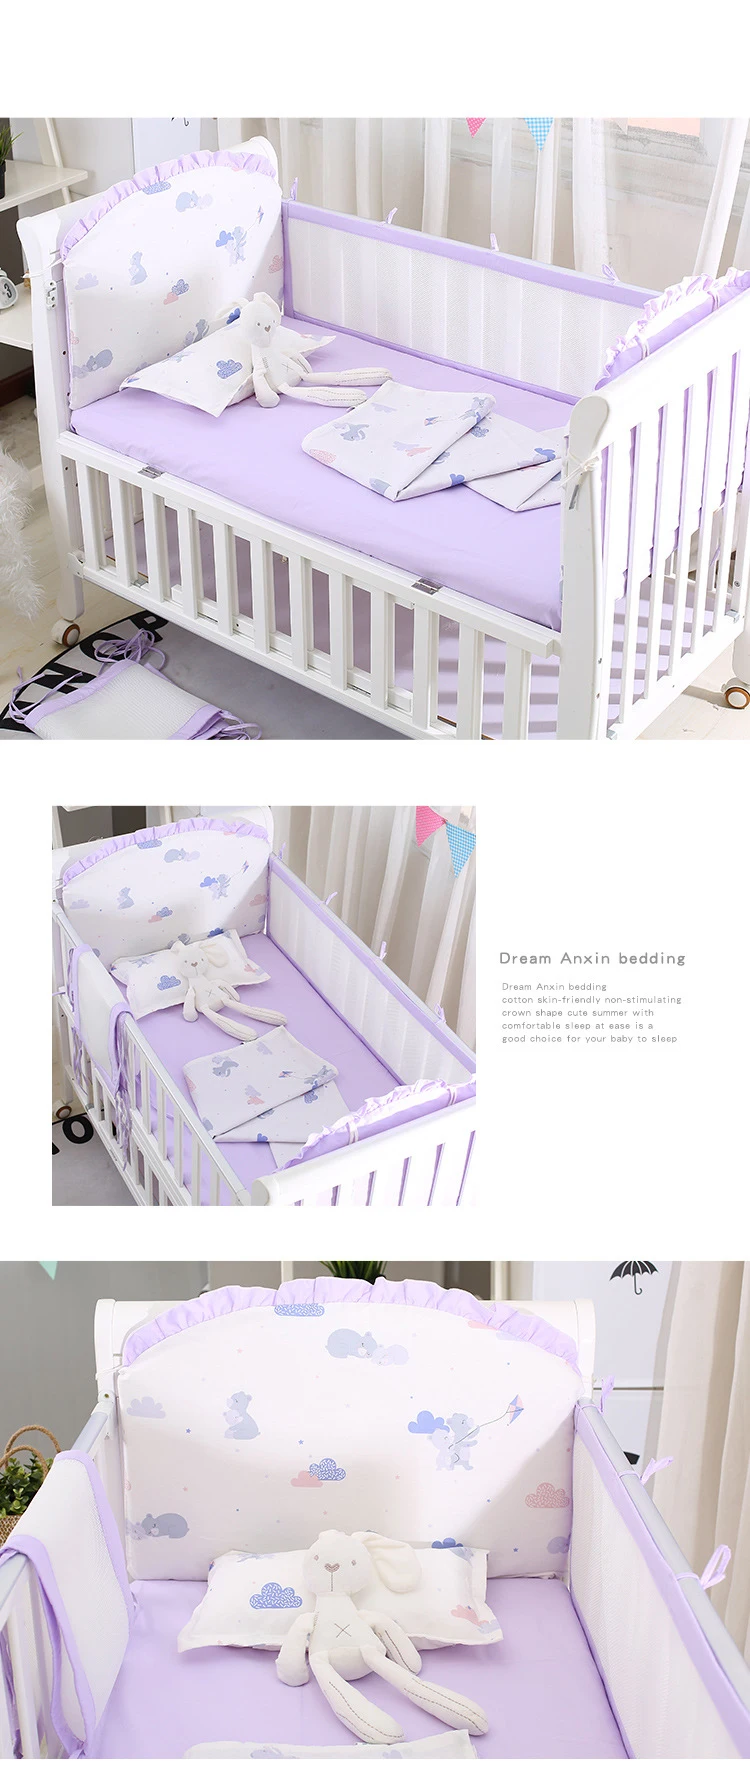 5 шт./компл. детская кроватка кровать бамперы+ постельное белье хлопок Детское покрывало для кровати бамперы для кроватки в кроватку для новорожденных Постельное белье